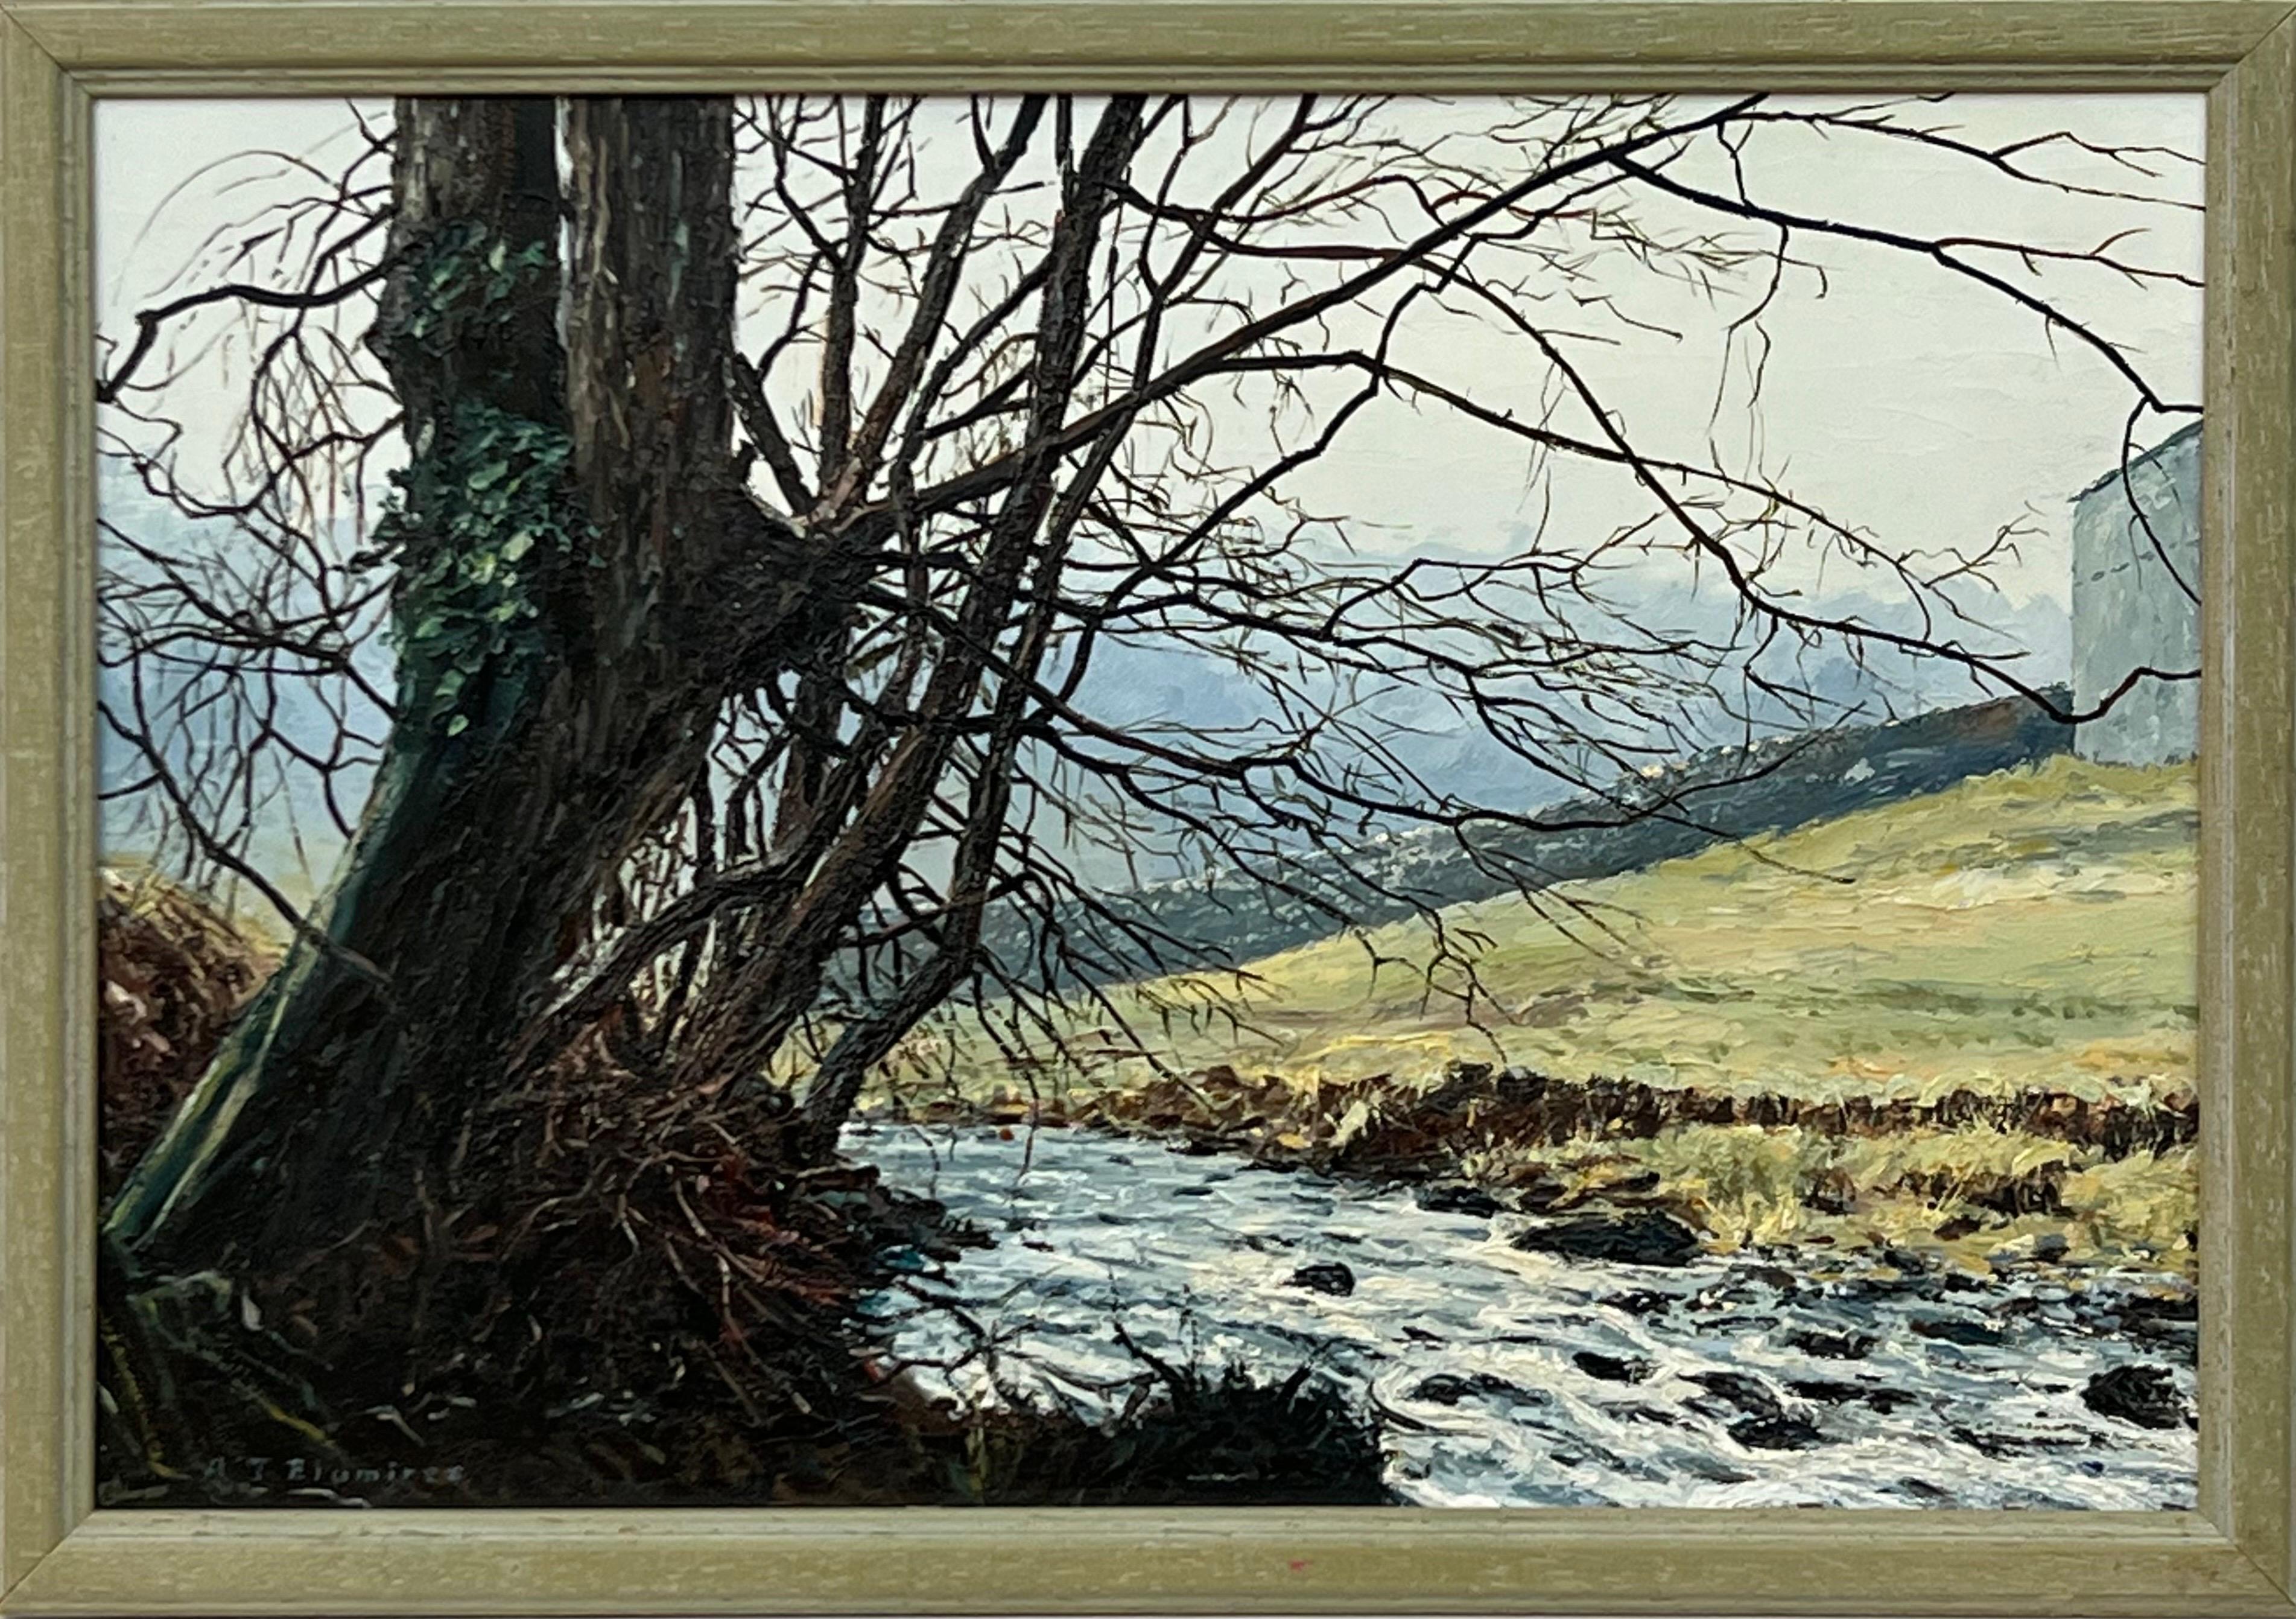 Peinture à l'huile d'un arbre au-dessus d'une rivière dans le Yorkshire Dales par un artiste paysagiste britannique - Mixed Media Art de Arthur Terry Blamires